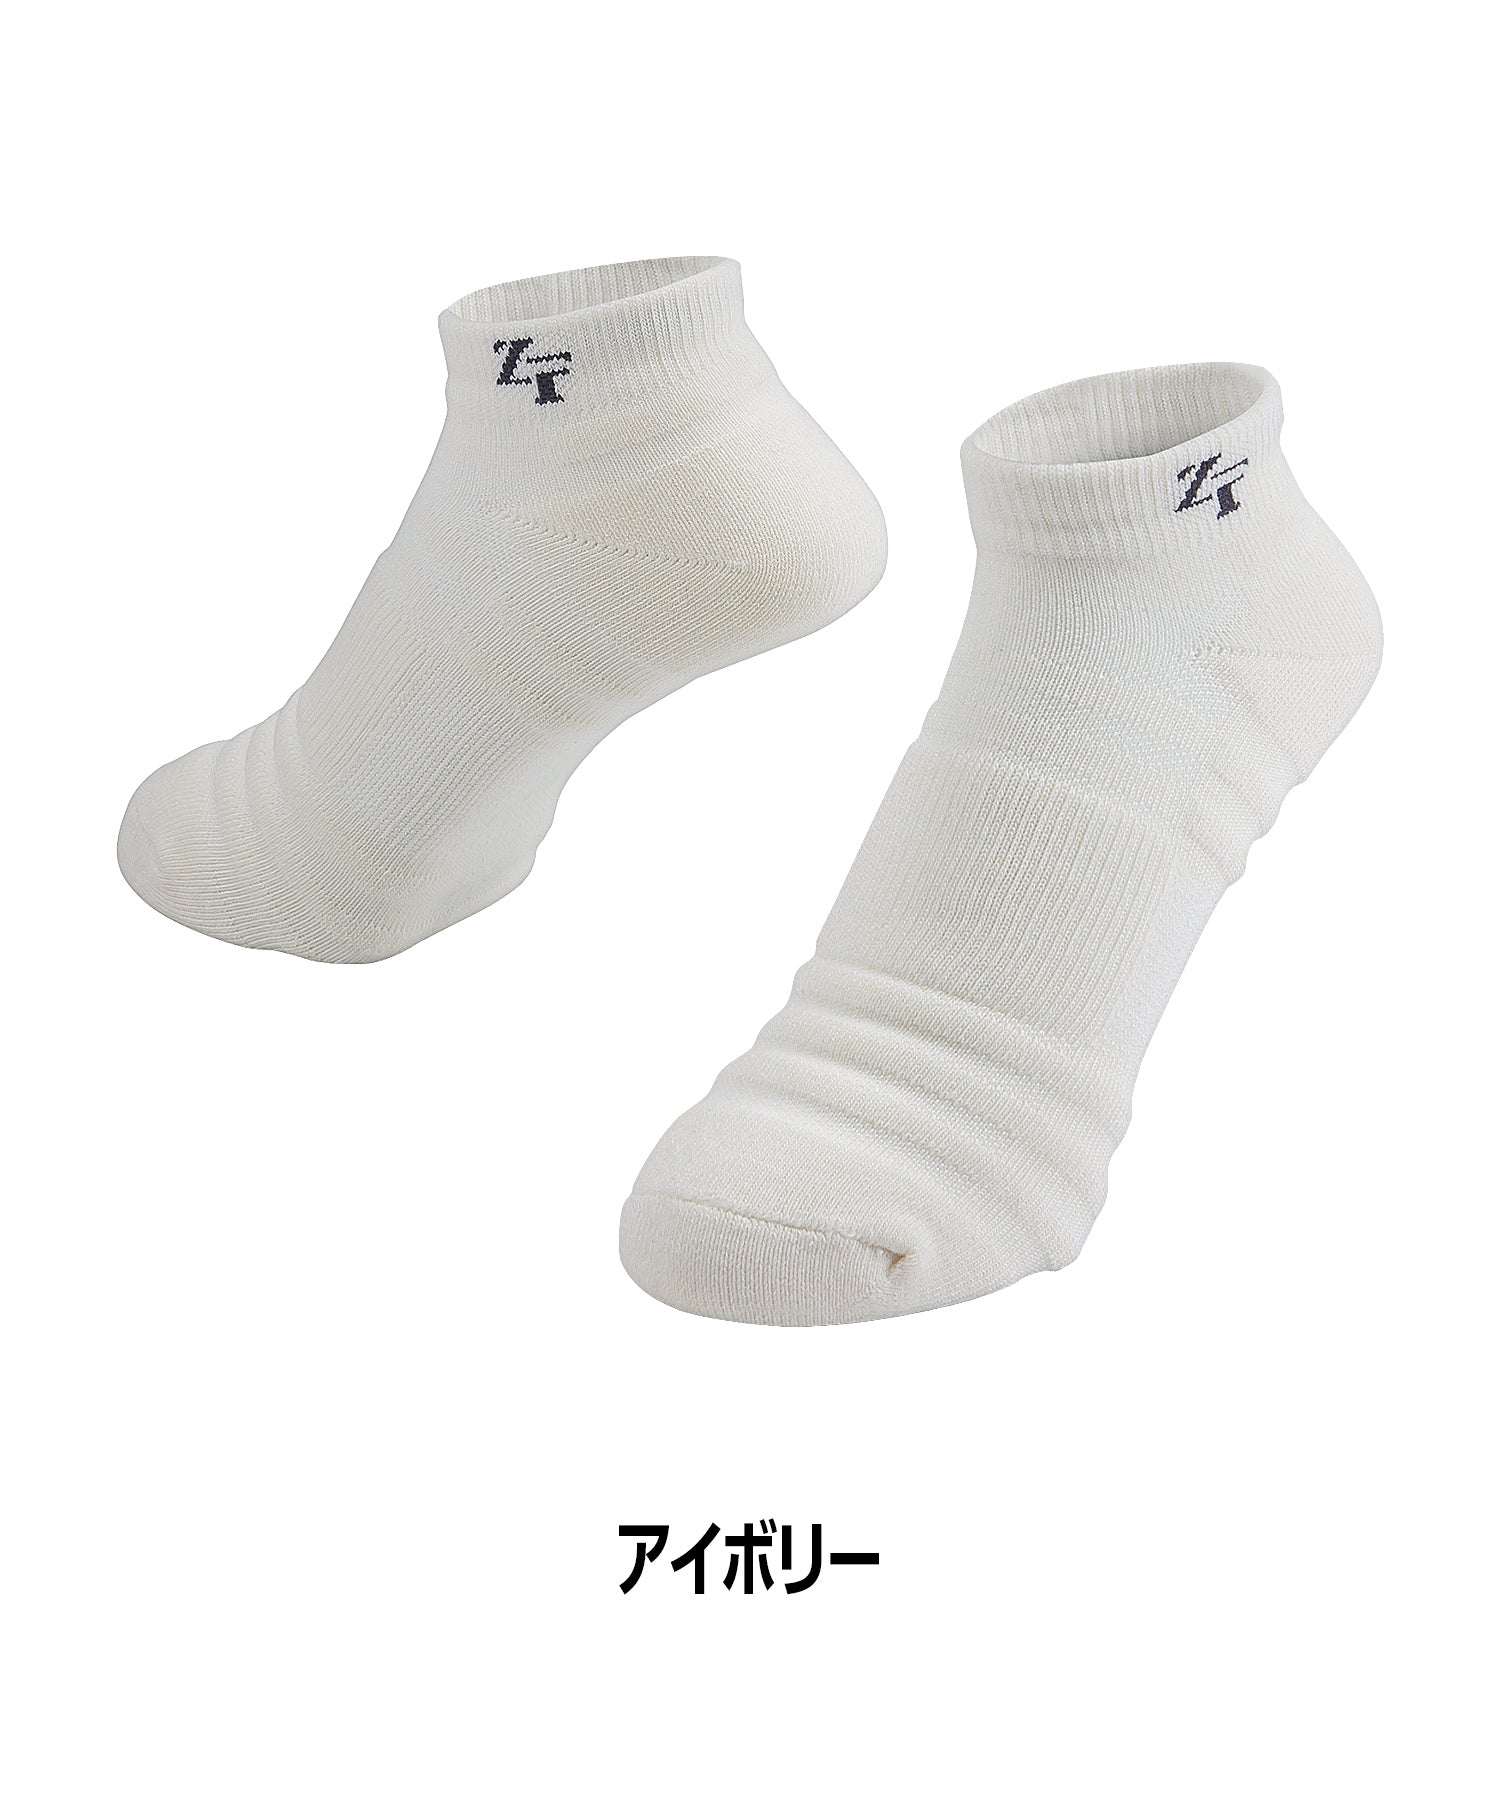 Antibacterial short socks, set of 2